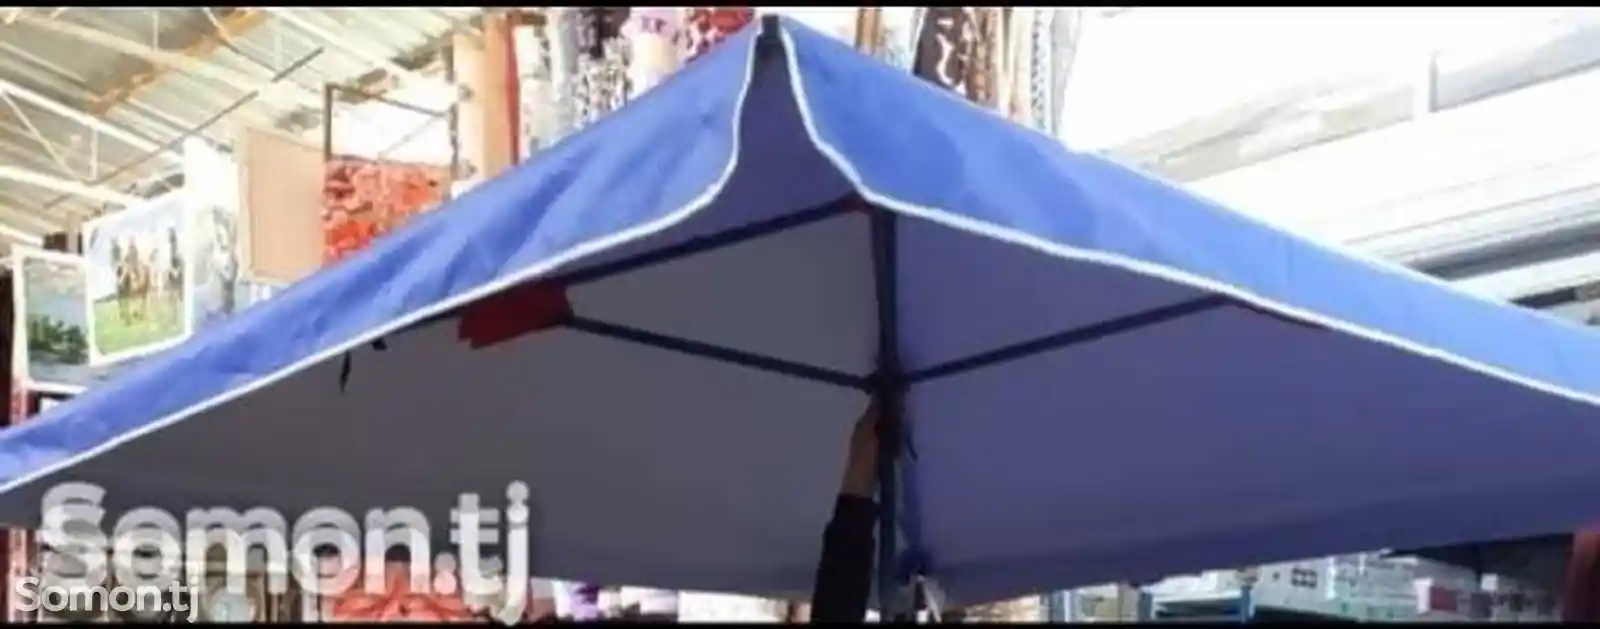 Садовый зонтик DF-231